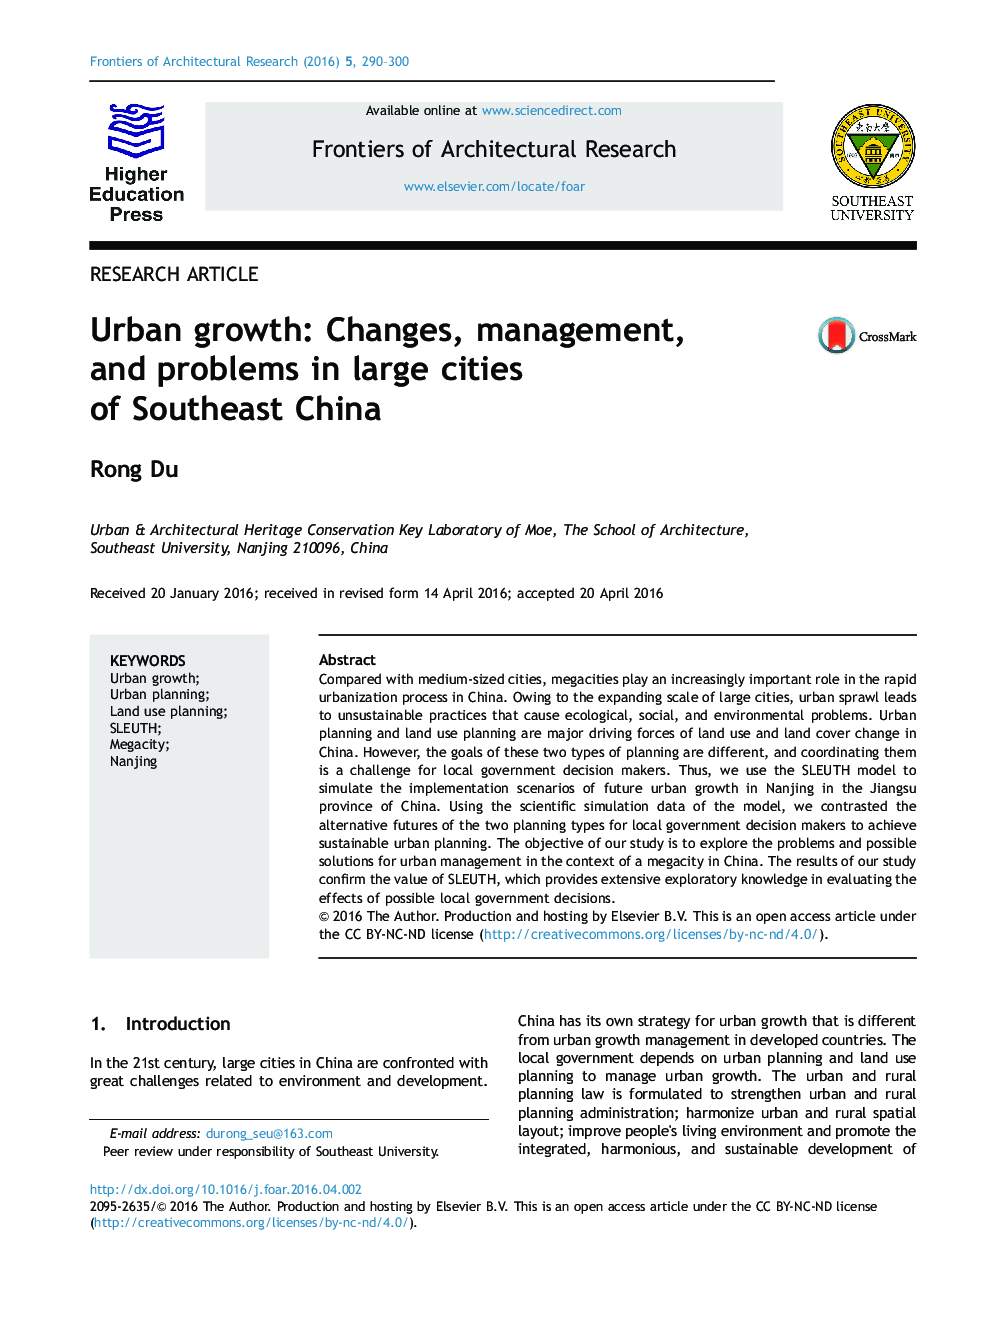 رشد شهری: تغییرات، مدیریت و مشکلات در شهرهای بزرگ جنوب شرق چین 